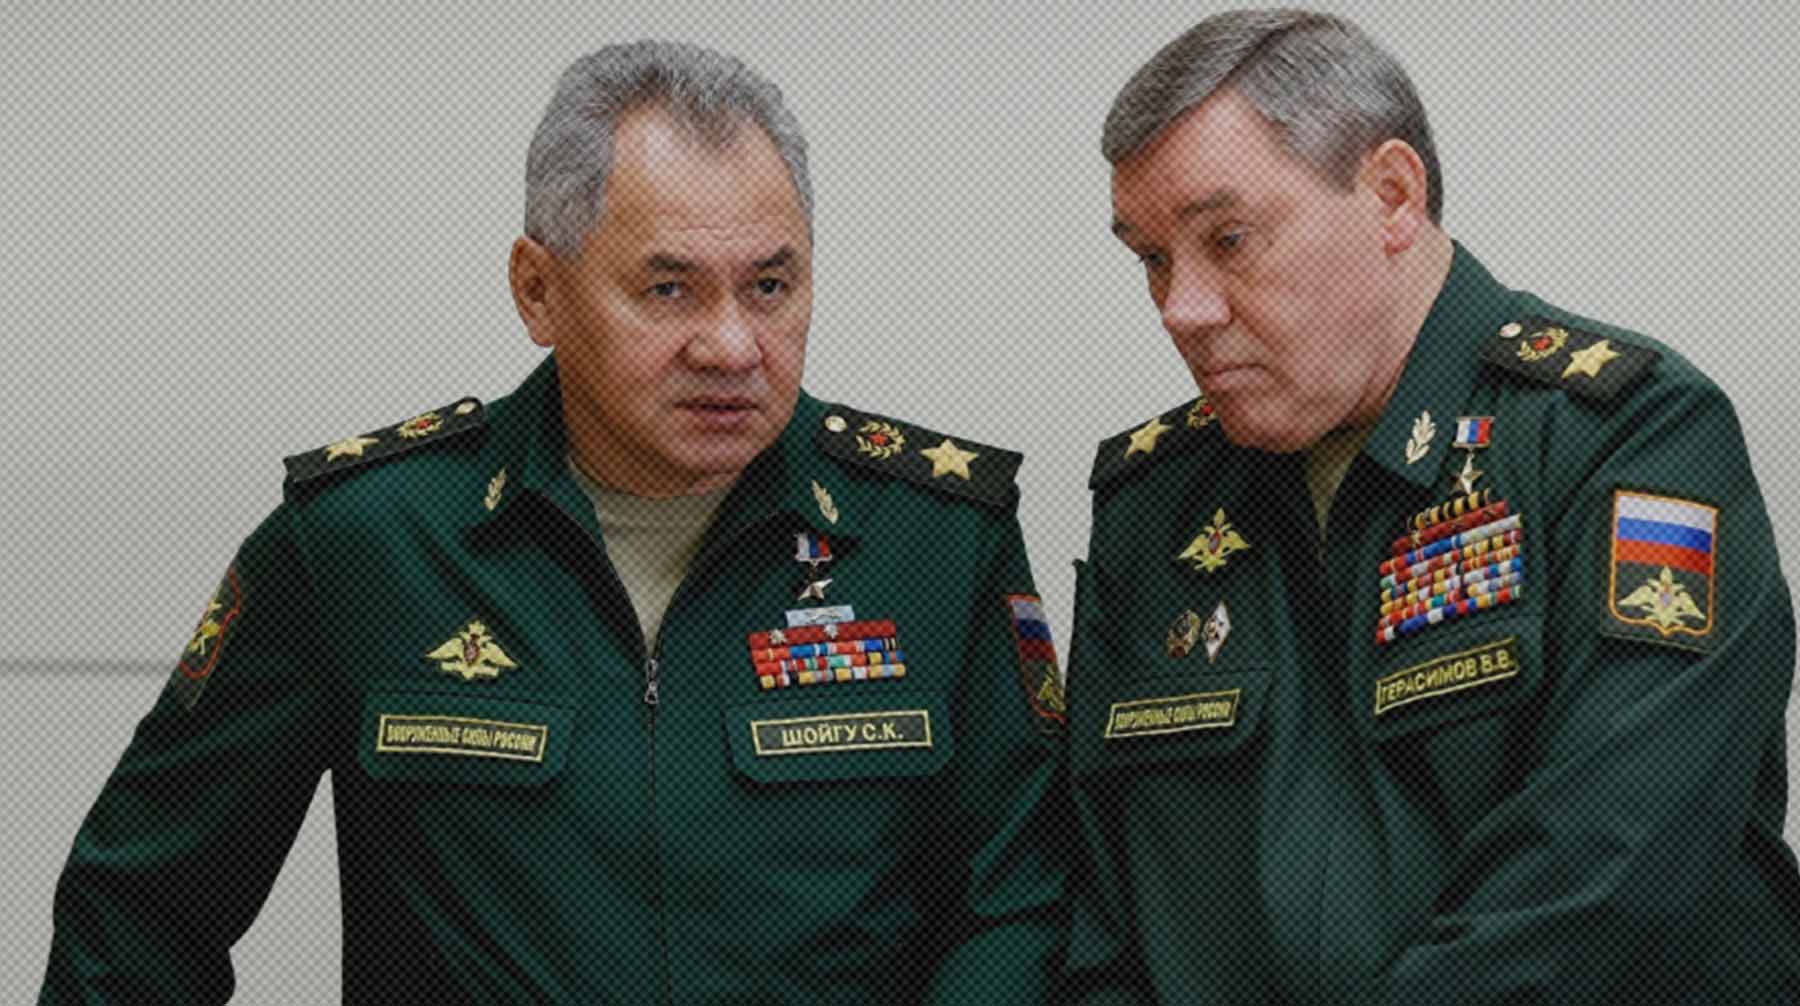 Еще одна угроза безопасности для РФ — использование Украины как инструмента для ведения гибридной войны Валерий Герасимов (справа)